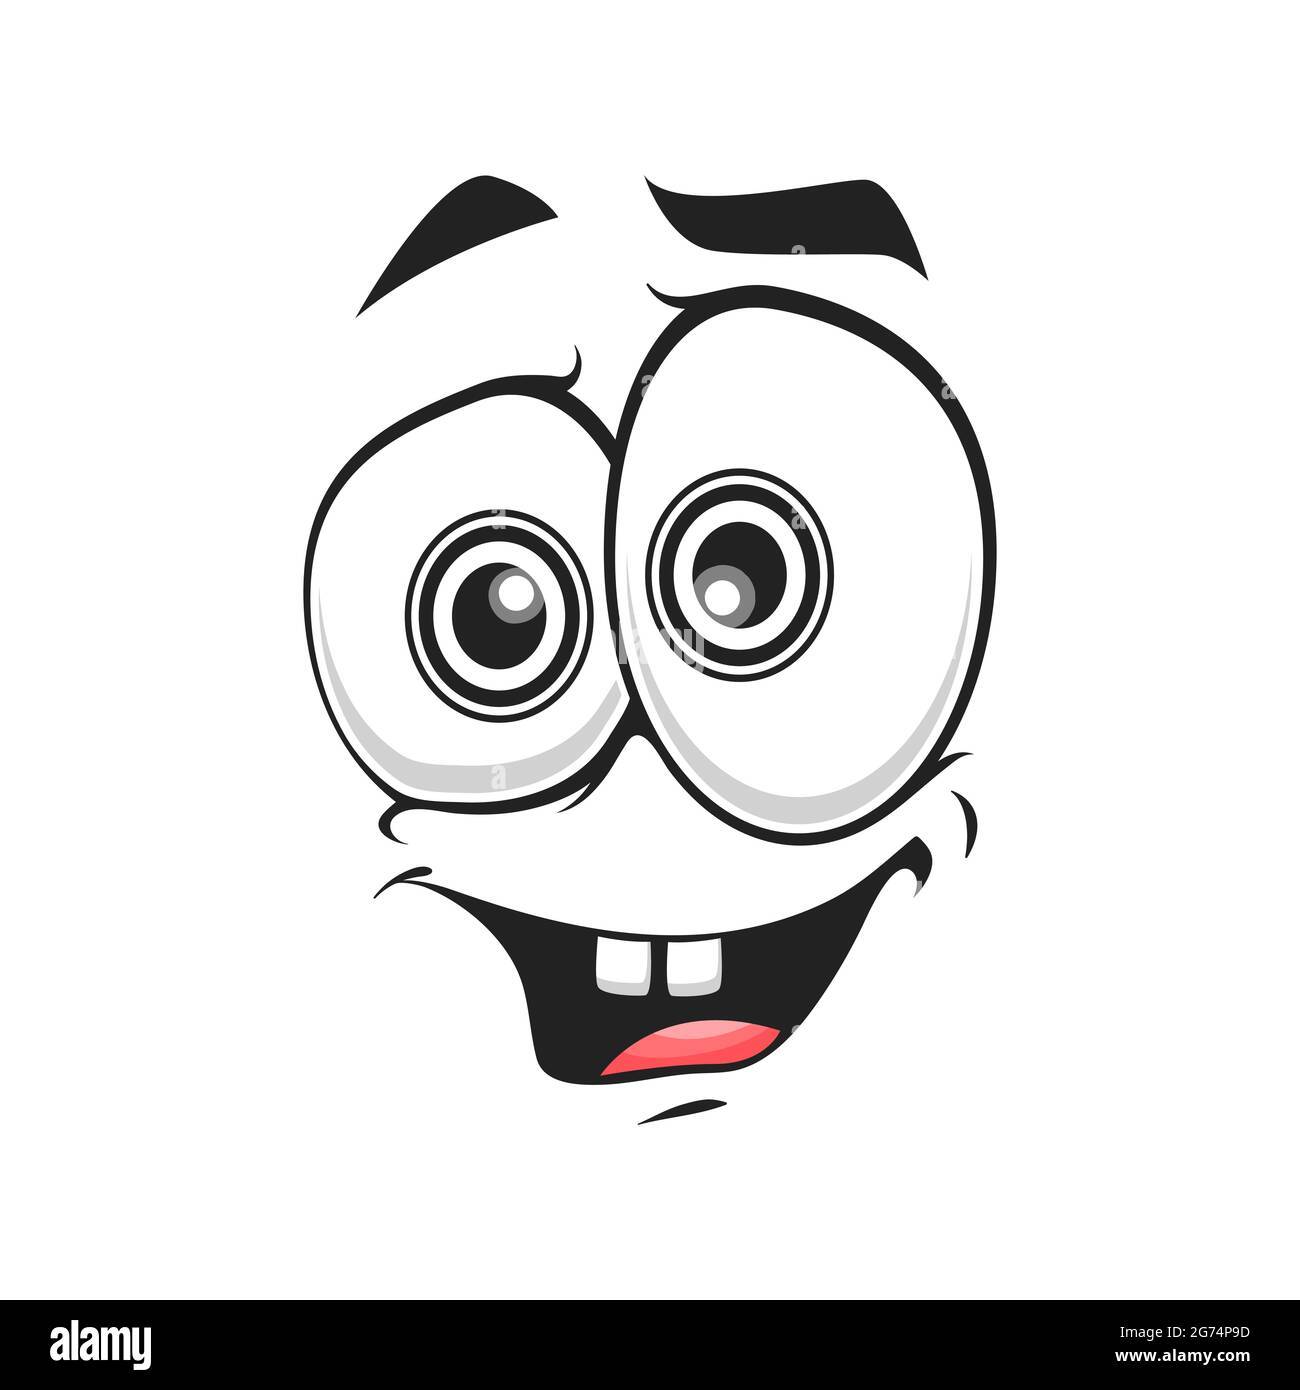 Cartoon Gesicht isoliert Vektor-Symbol, erfreut Lächeln Gesichts Emoji von lustigen Kreatur. Fröhliche Emotionen, komisches Gesicht mit toothy lächelndem Mund und Goggle Roun Stock Vektor